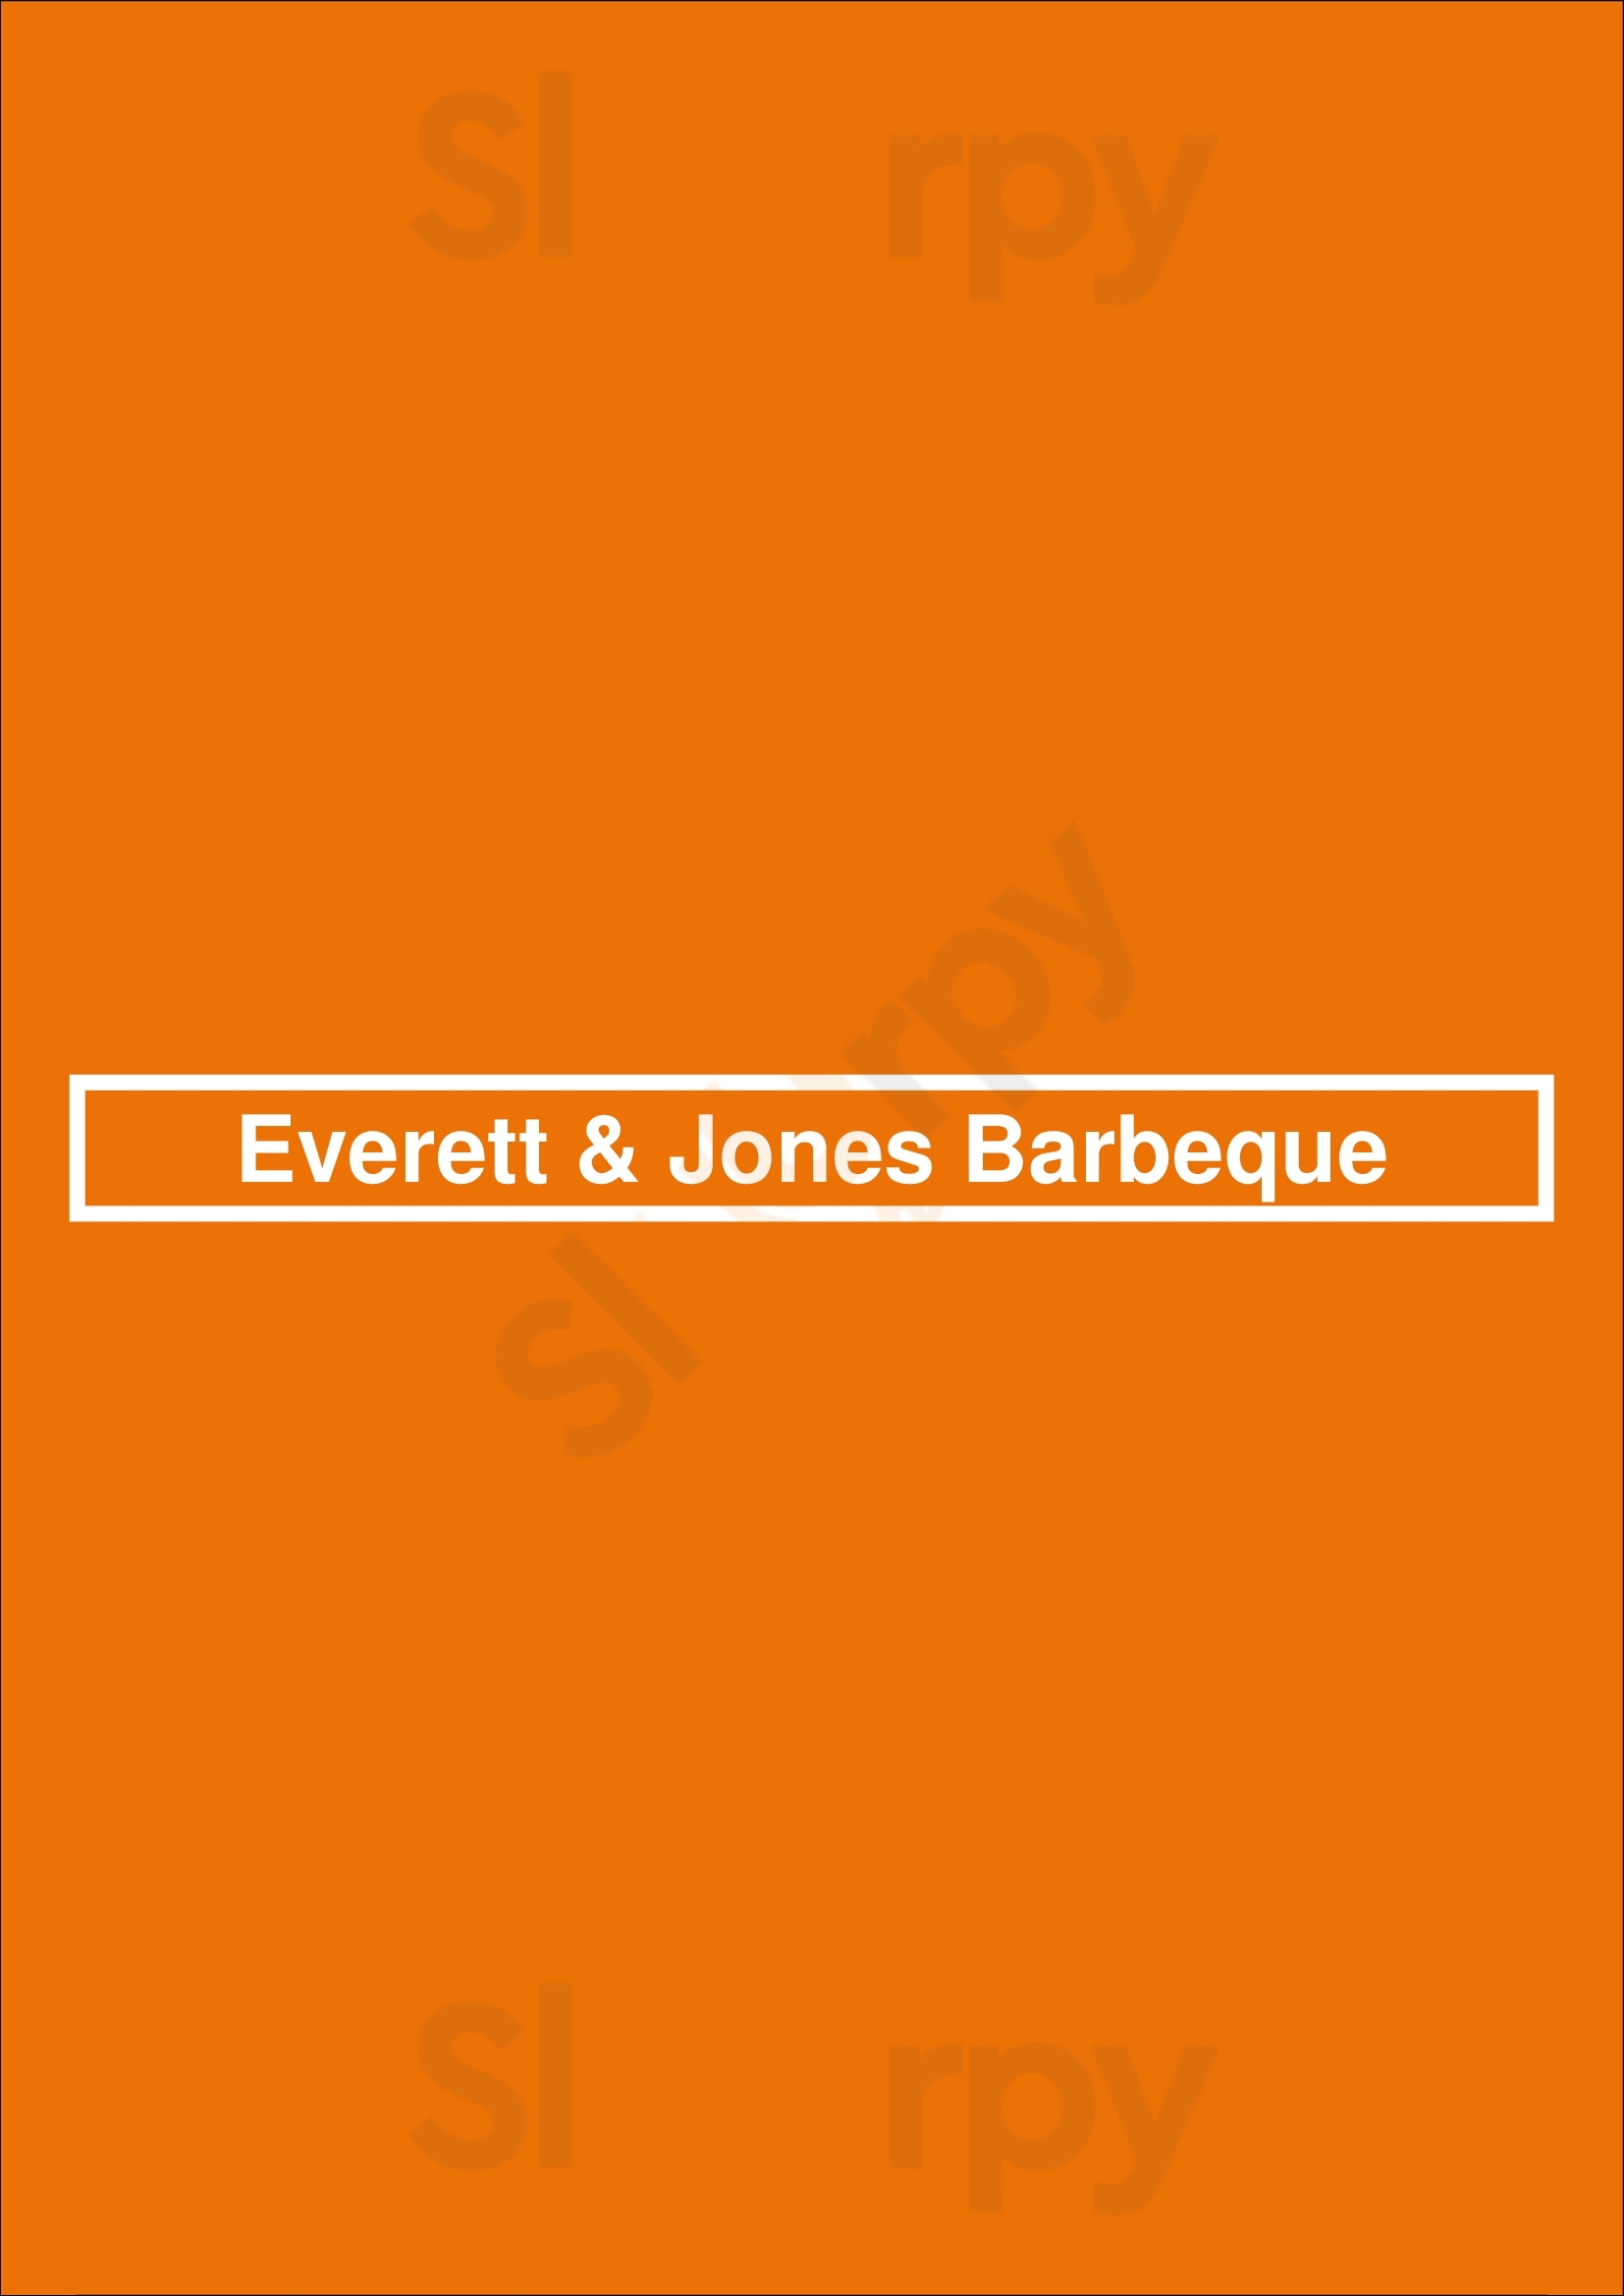 Everett & Jones Barbeque Oakland Menu - 1